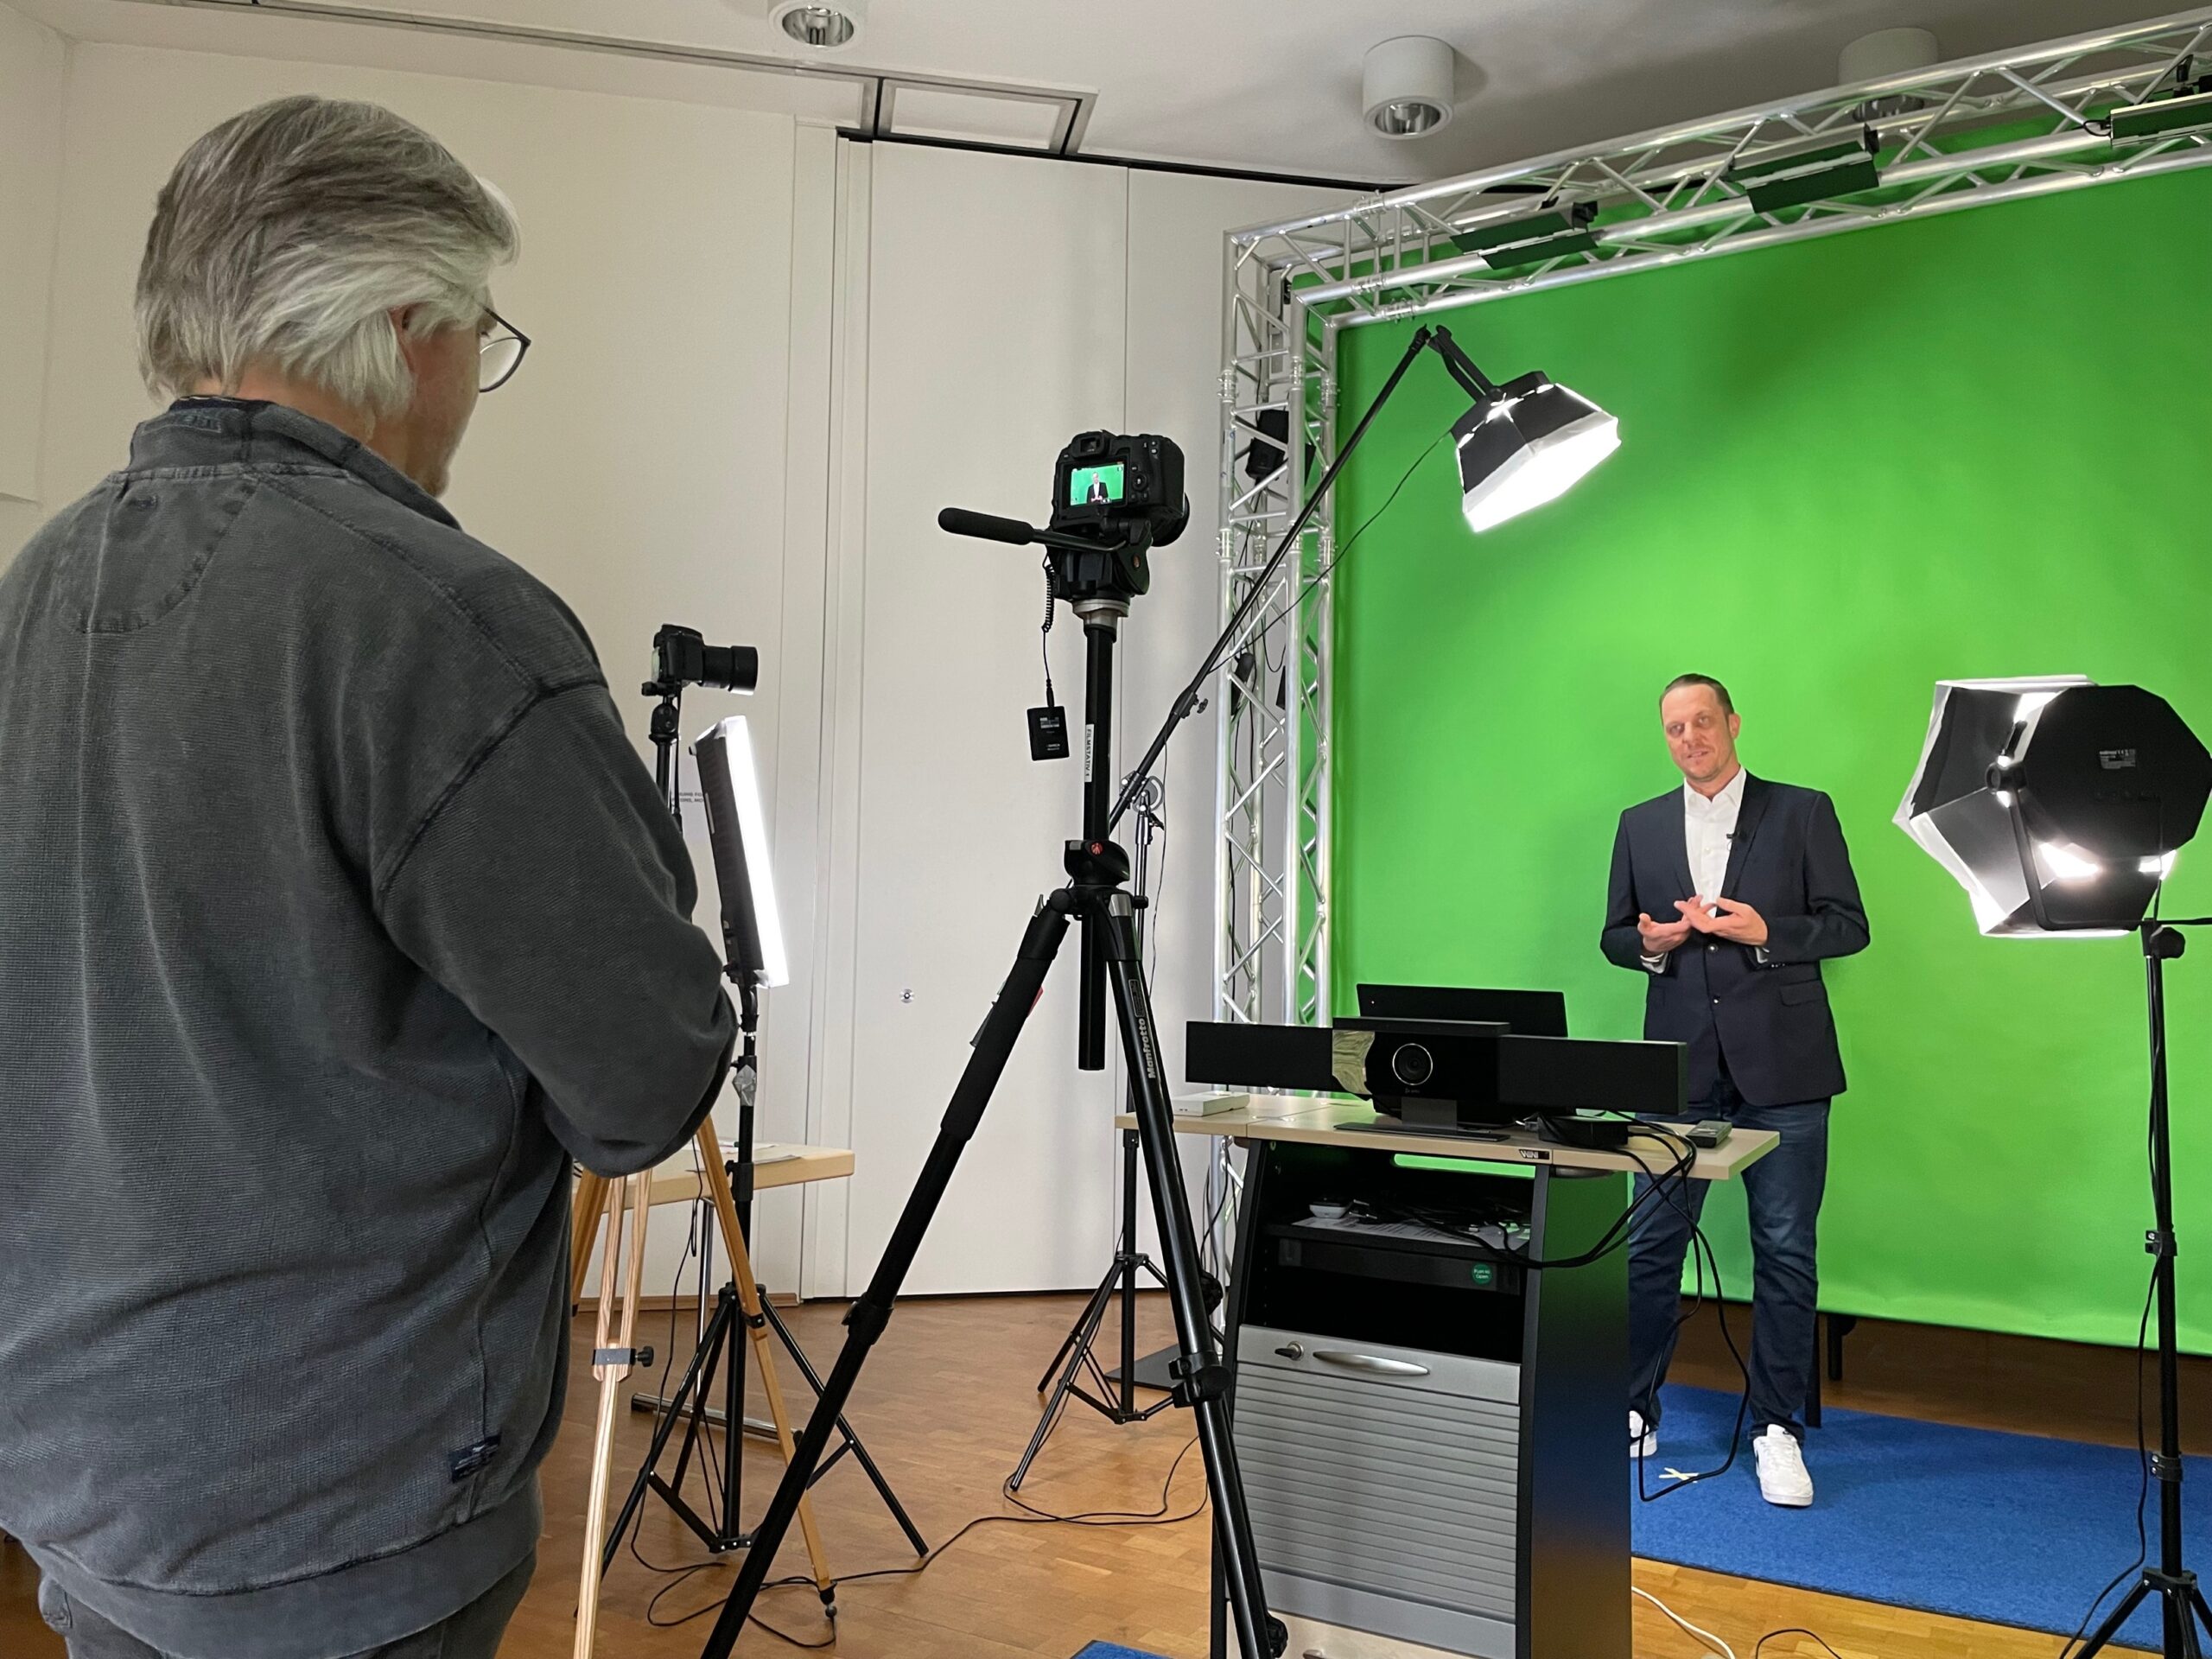 Unser Vorstand Frank Linneberg ist vor einem Grennscreen zu sehen und wird für ein Lernvideo aufgezeichnet.